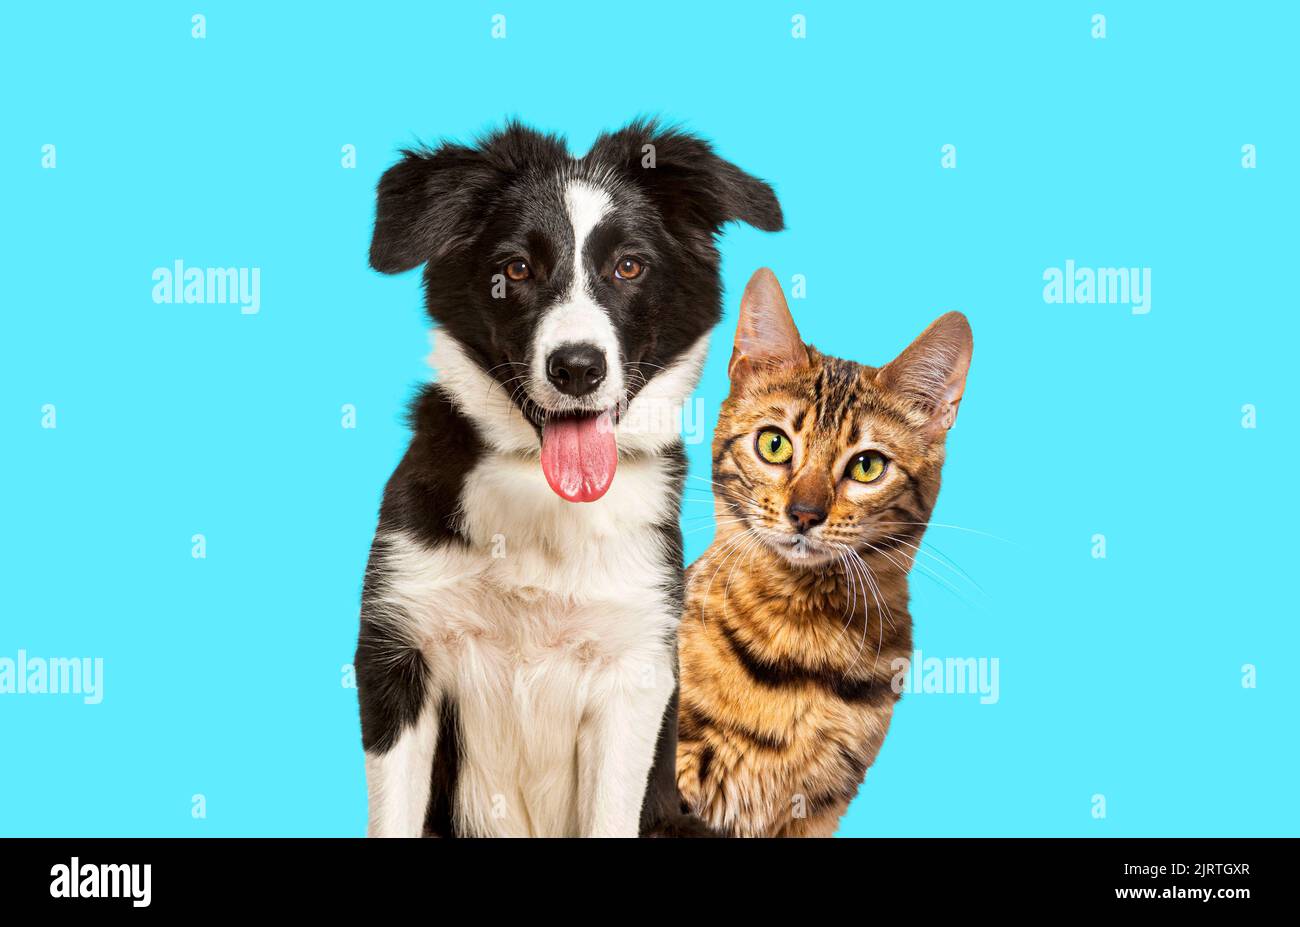 Gato de bengala marrón y un perro collie borde con expresión feliz sobre fondo azul, mirando a la cámara Foto de stock